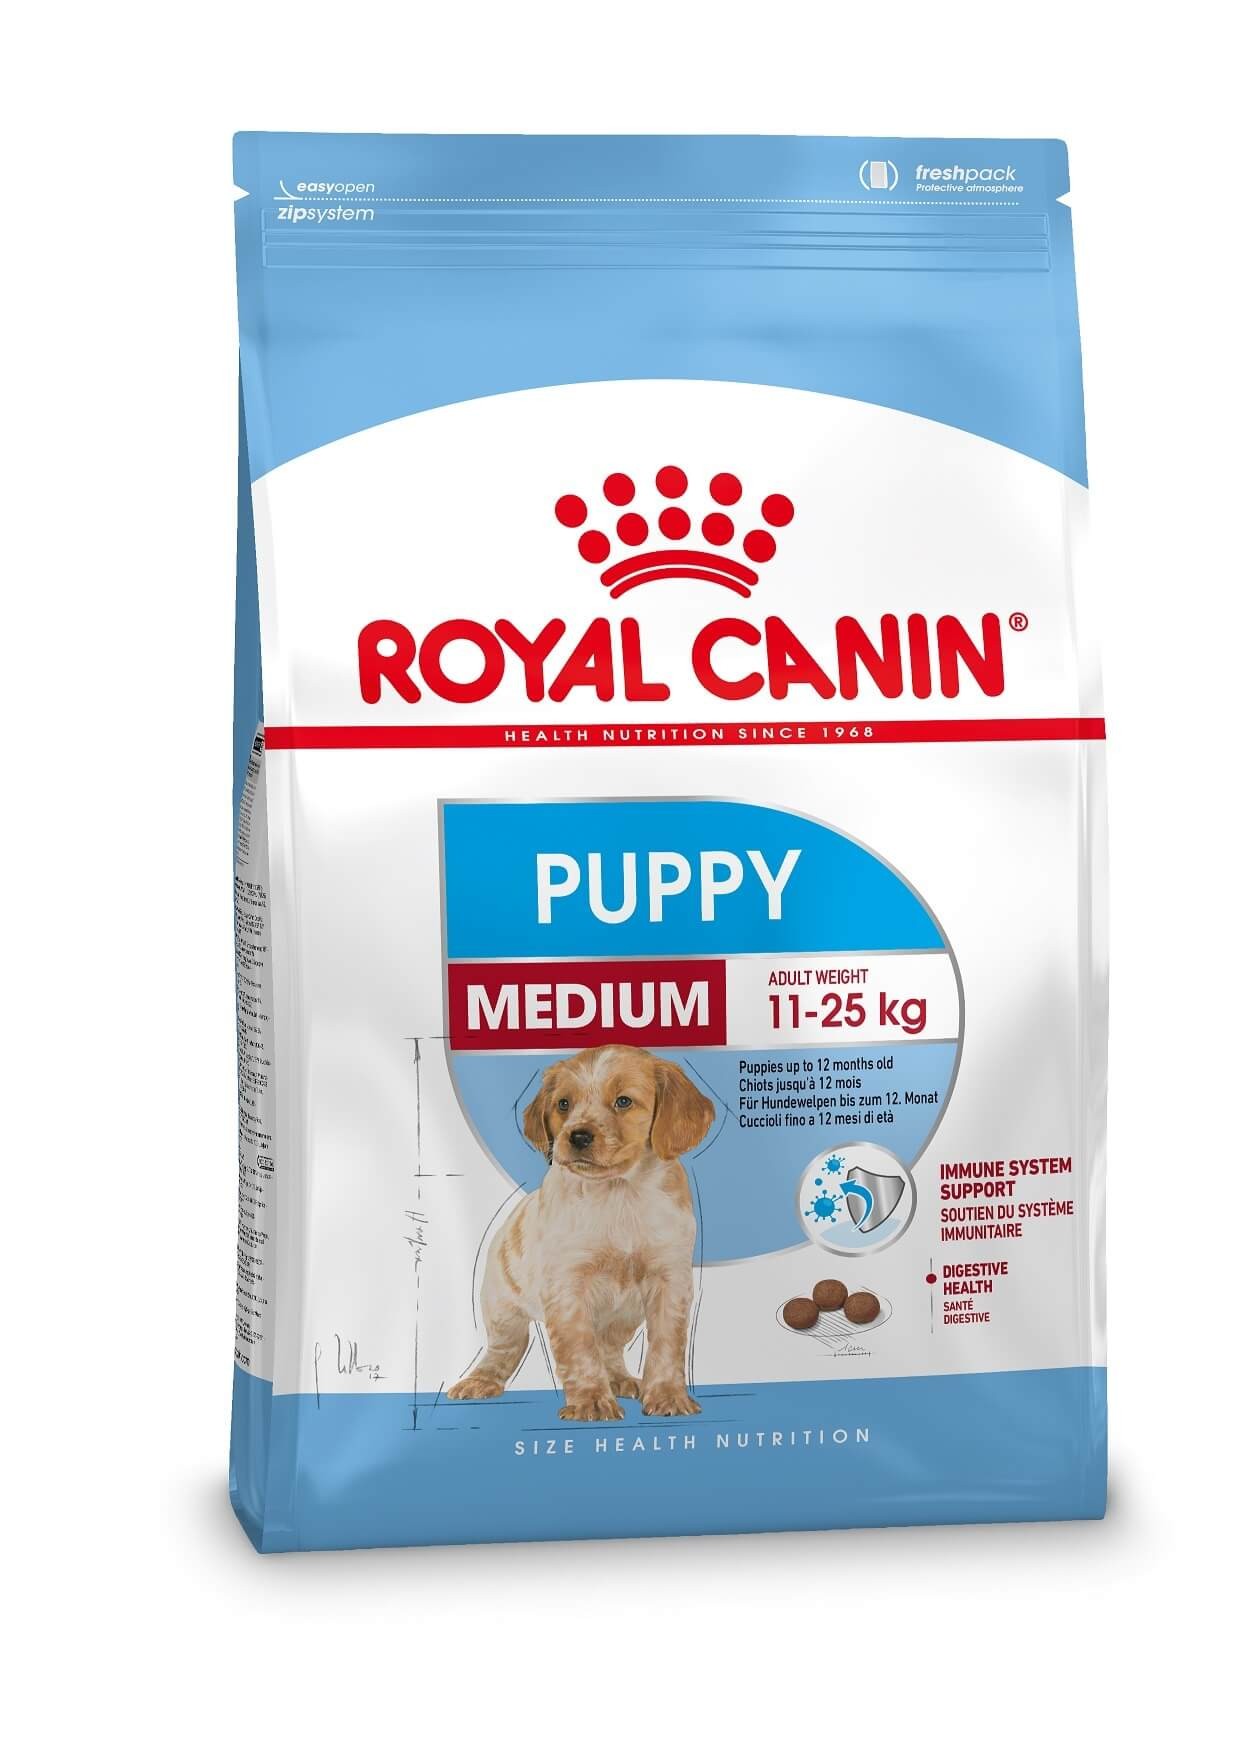 Bild von 4 kg Royal Canin Medium Puppy Hundefutter